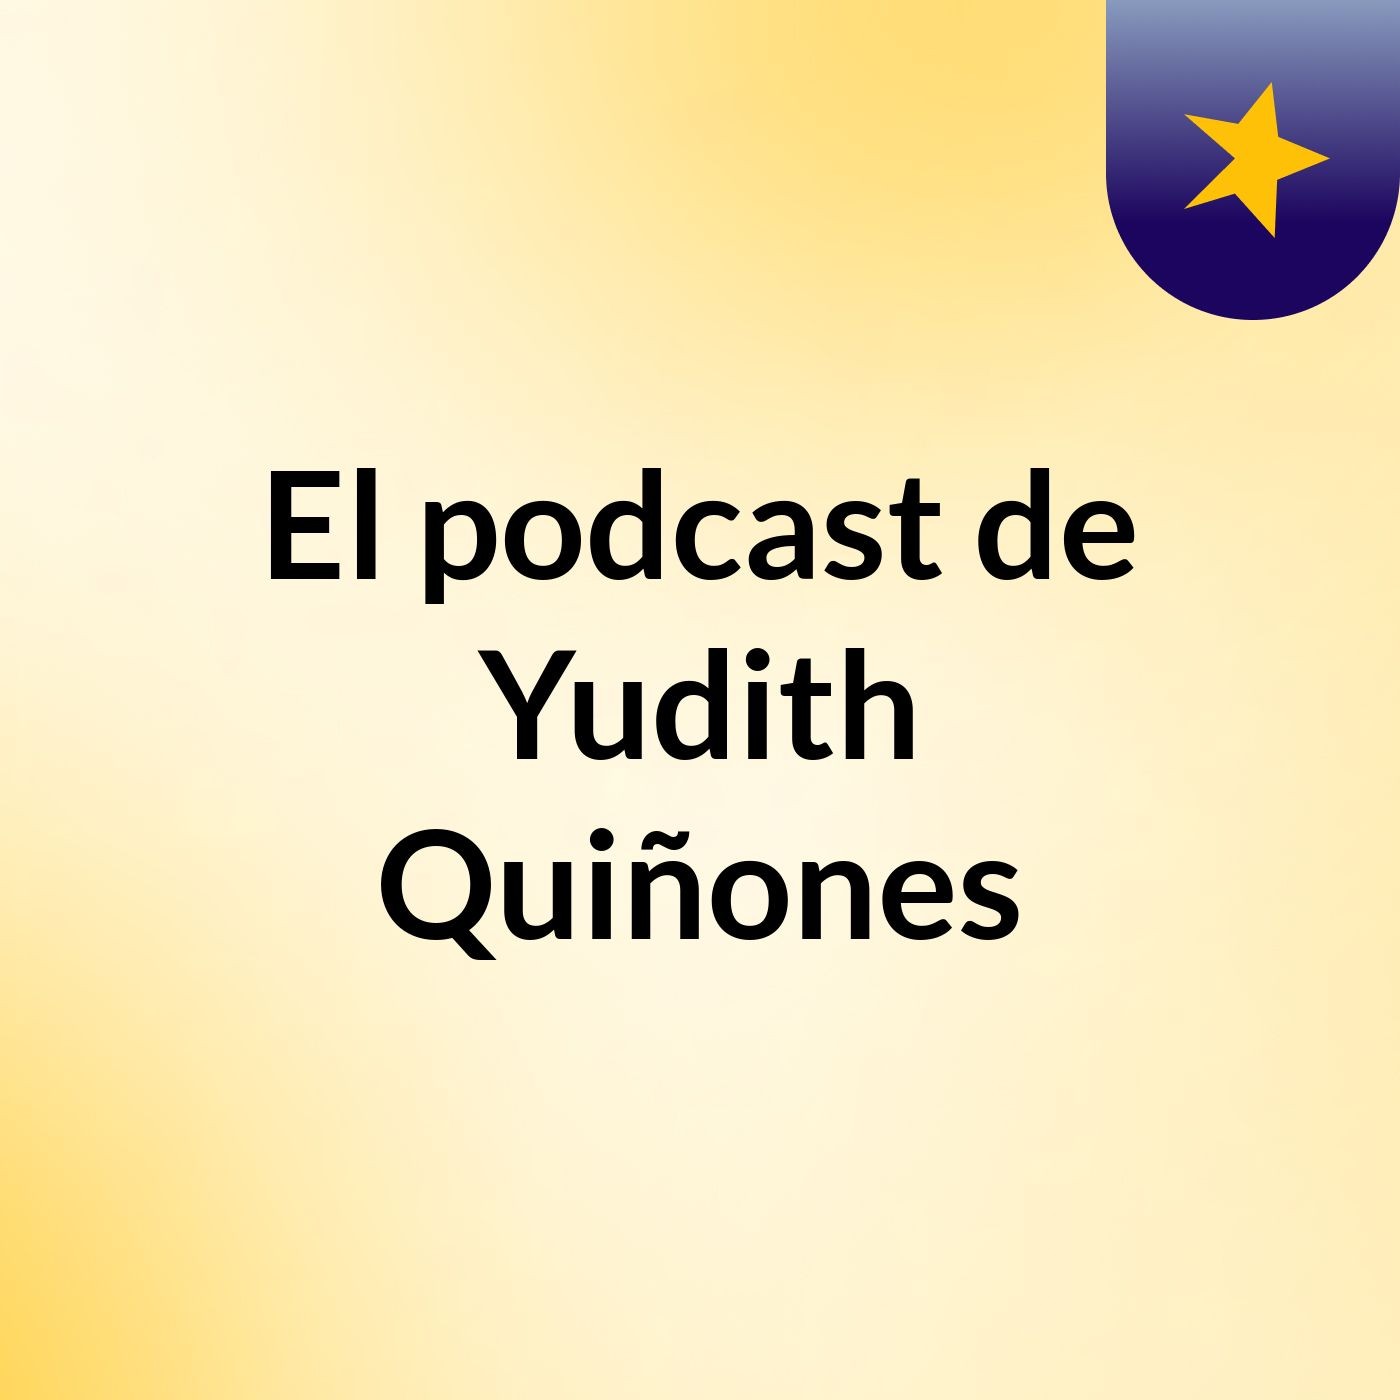 El podcast de Yudith Quiñones